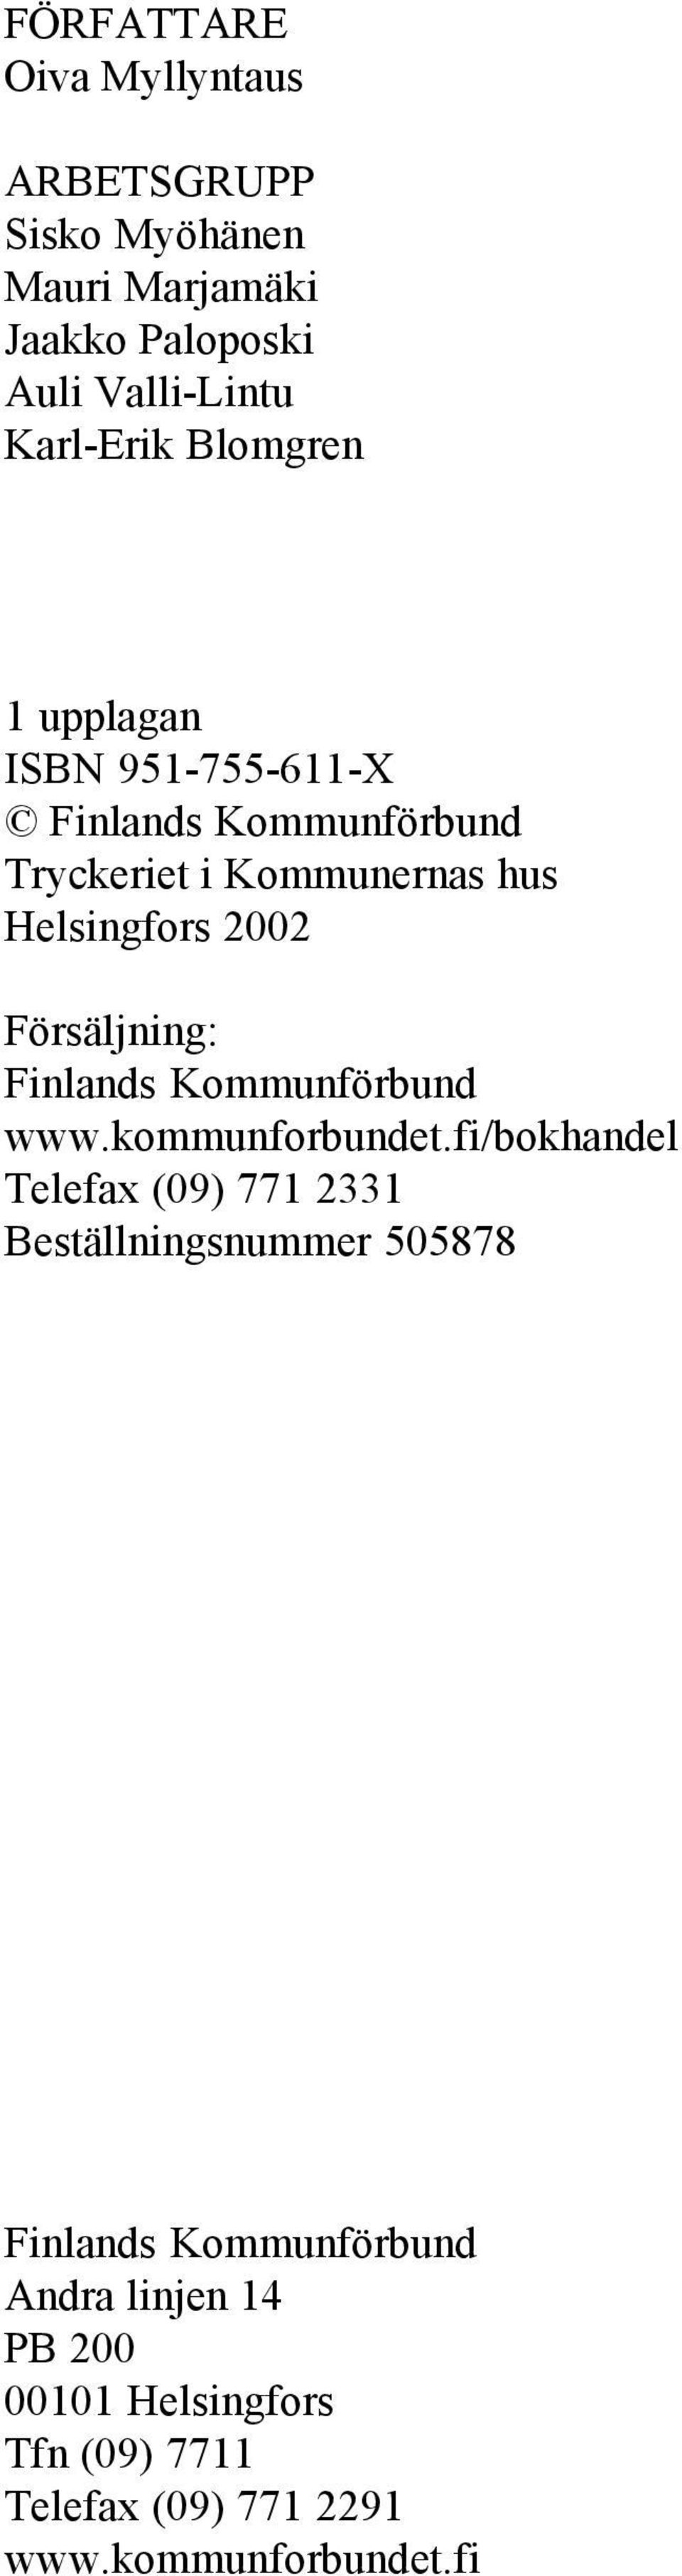 Försäljning: Finlands Kommunförbund www.kommunforbundet.